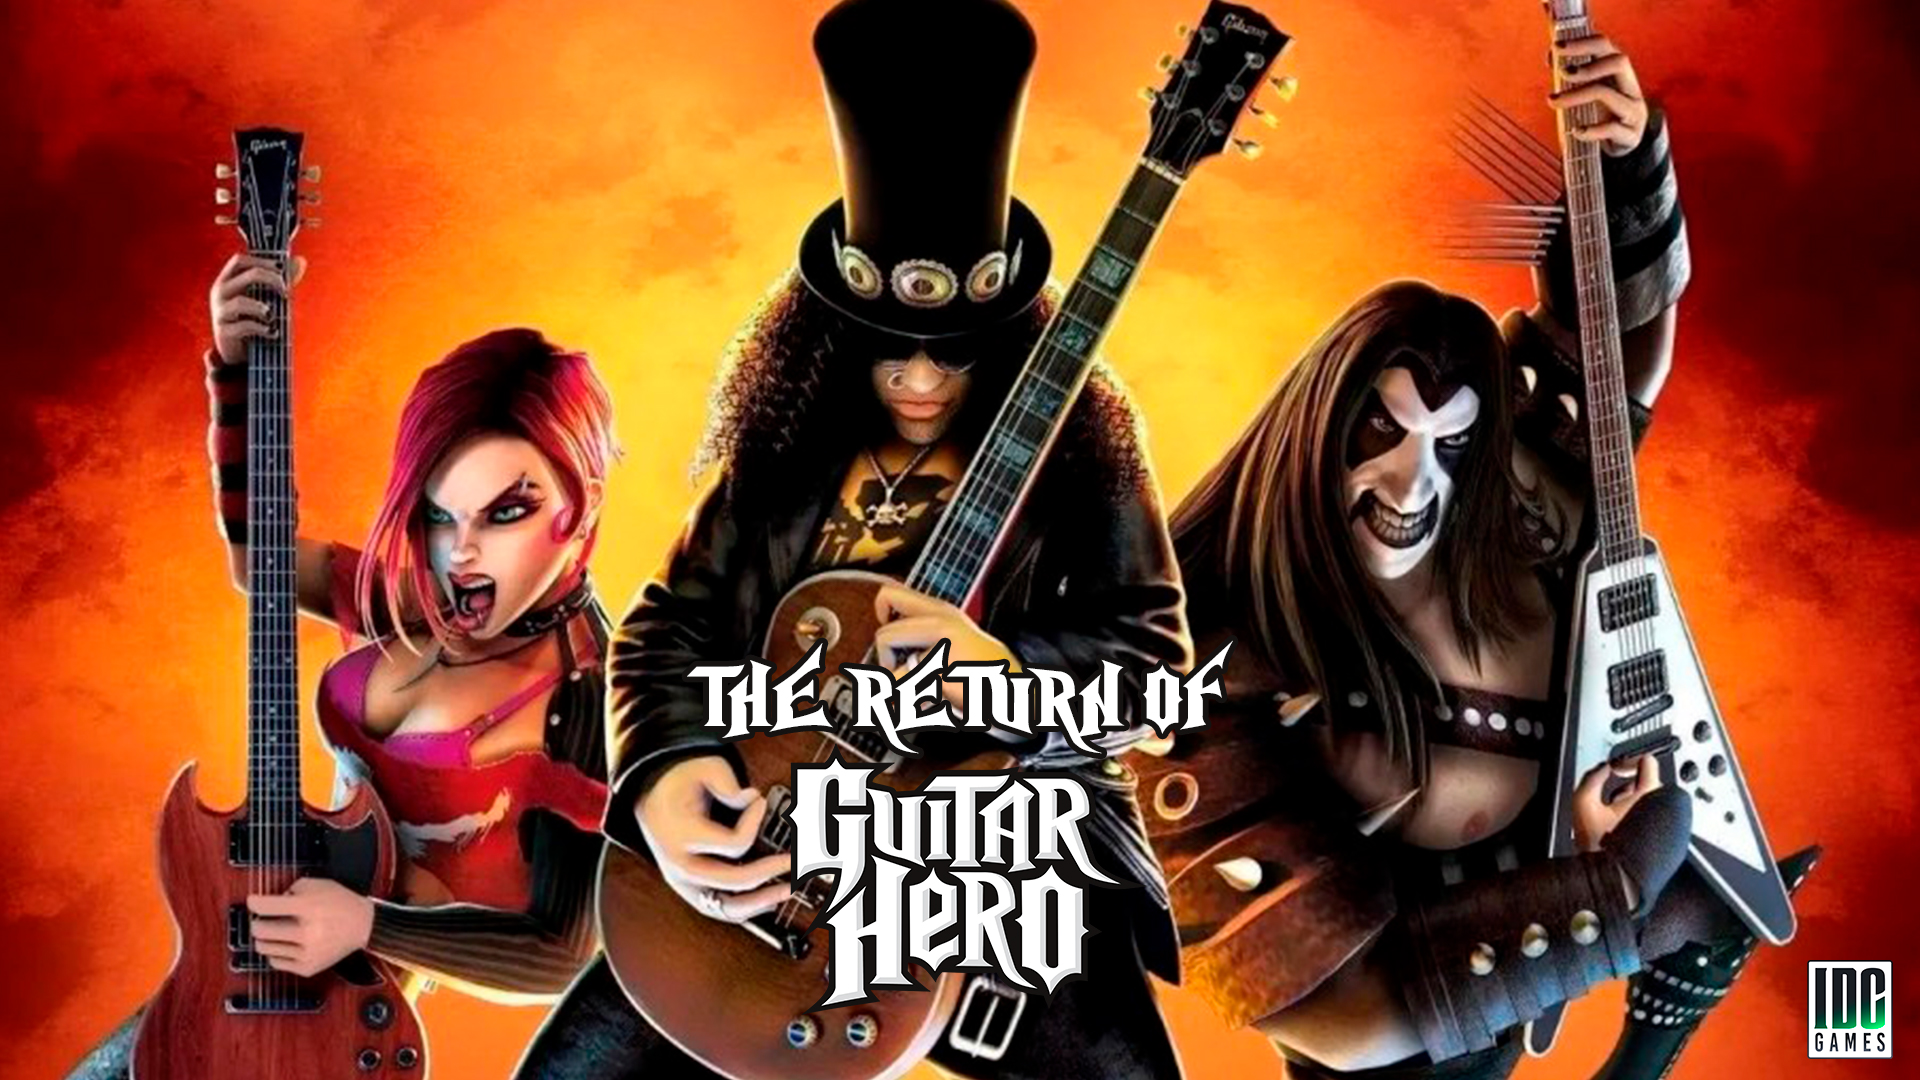 The Return of Guitar Hero